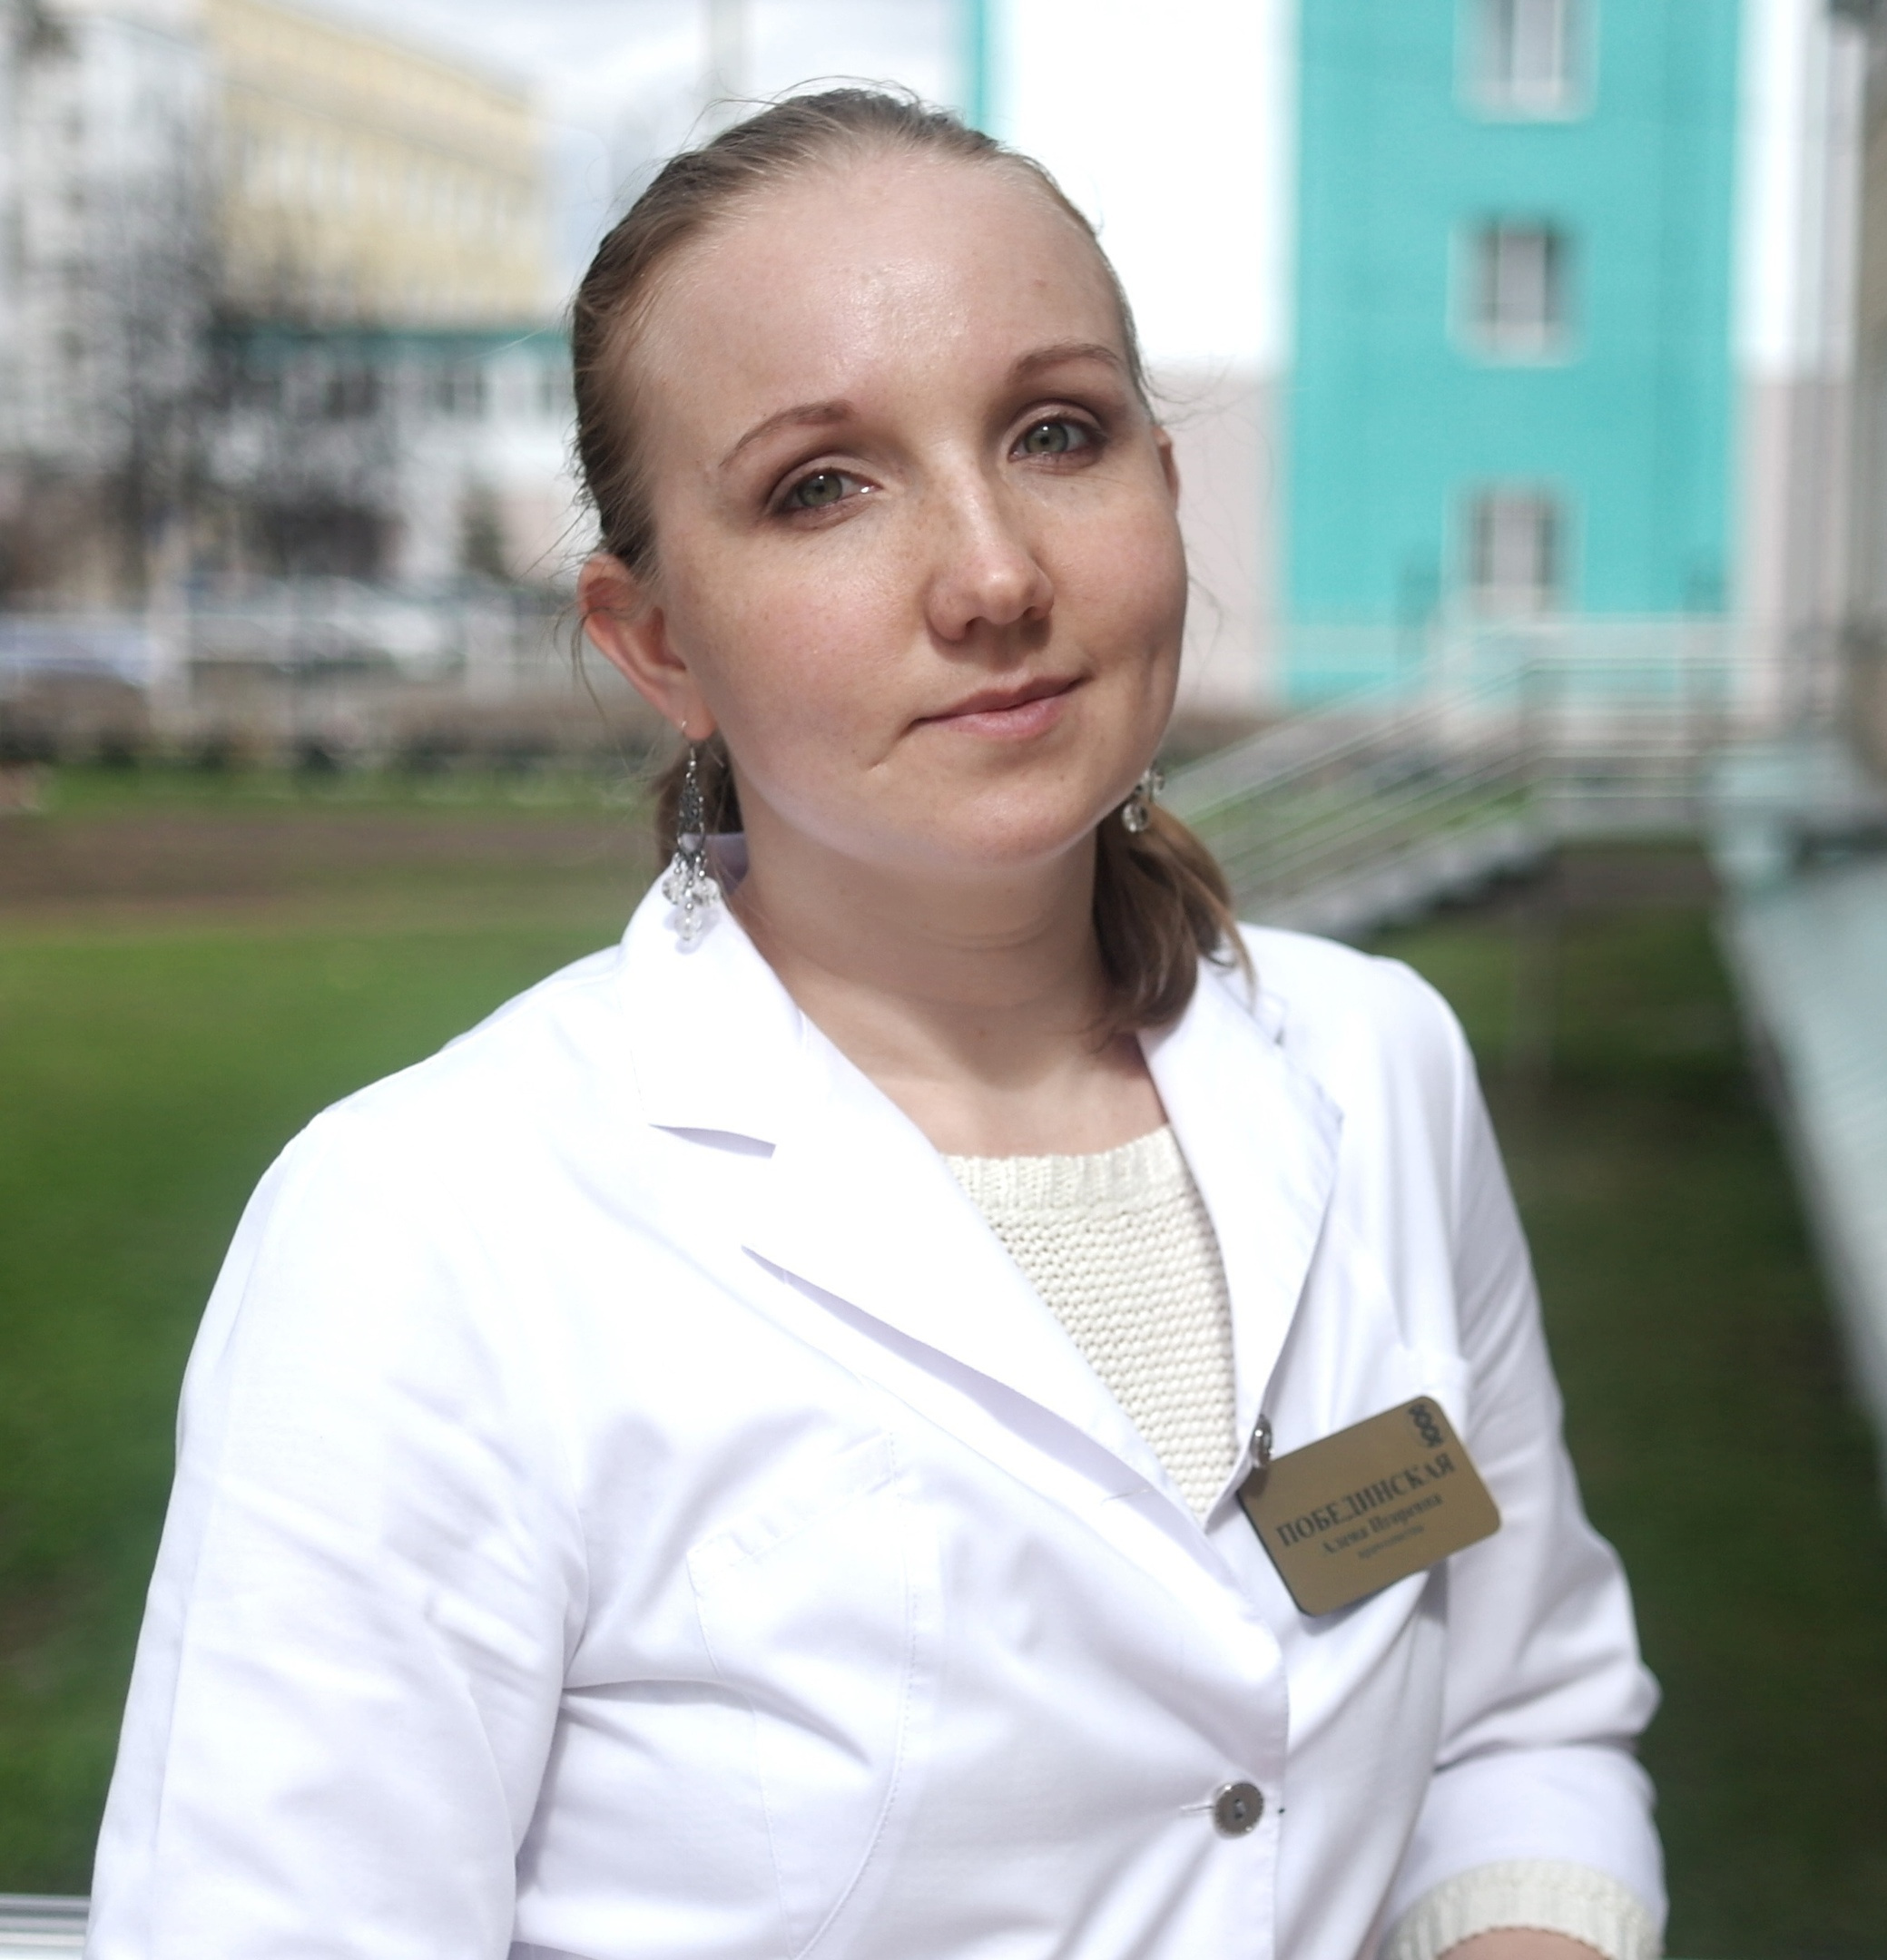 Лечащий врач-генетик девочки Алёна Побединская говорит, что сейчас генетические анализы можно проводить бесплатно